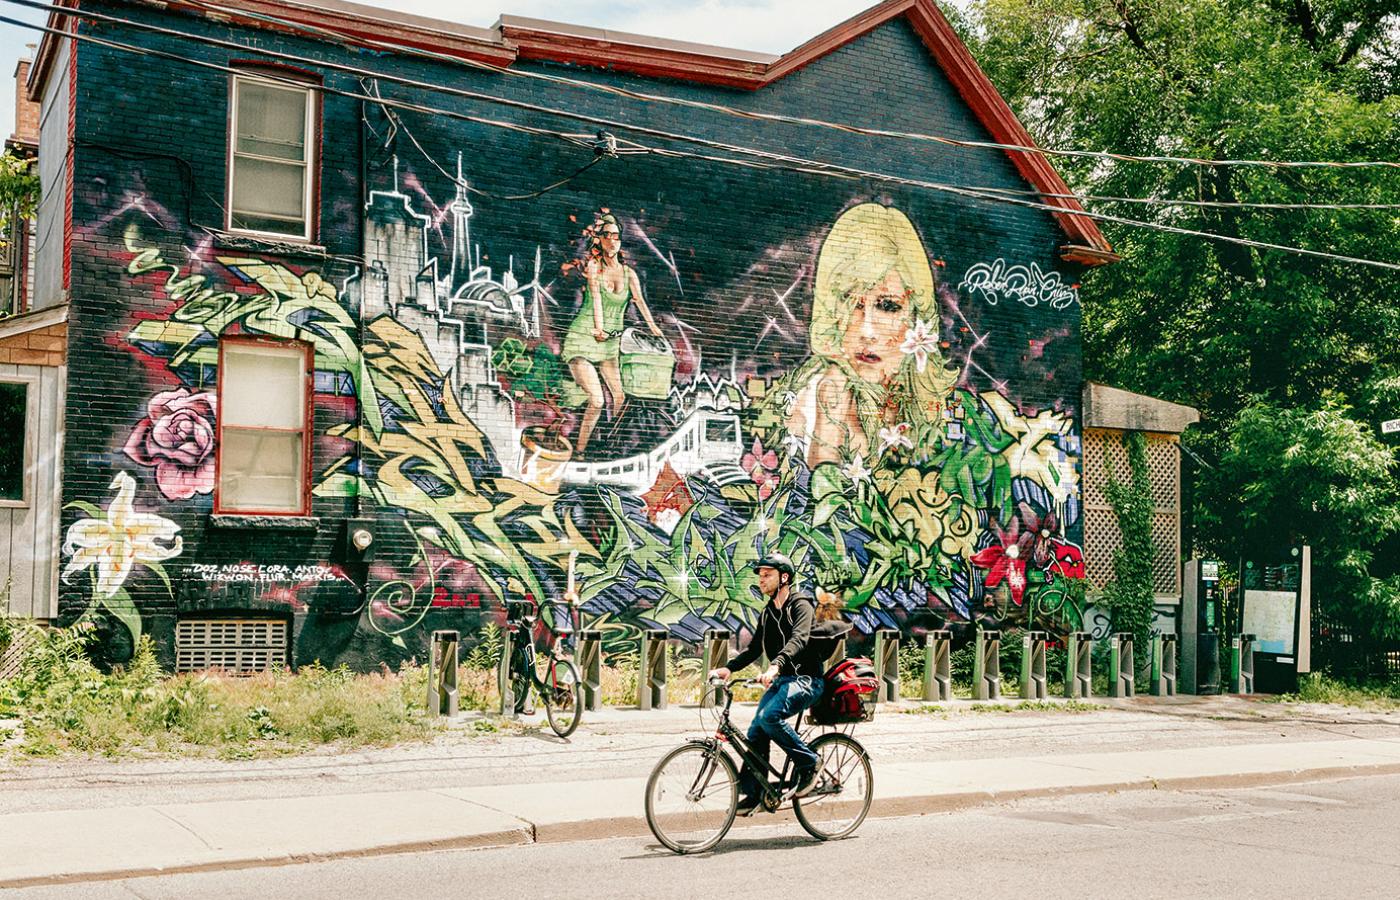  Kiedy robi się ciepło, wielu torontończyków przesiada się na rowery, by uniknąć miejskich korków. To także najbardziej wielokulturowe miasto na świecie. (Fot. Monika Grzelak)